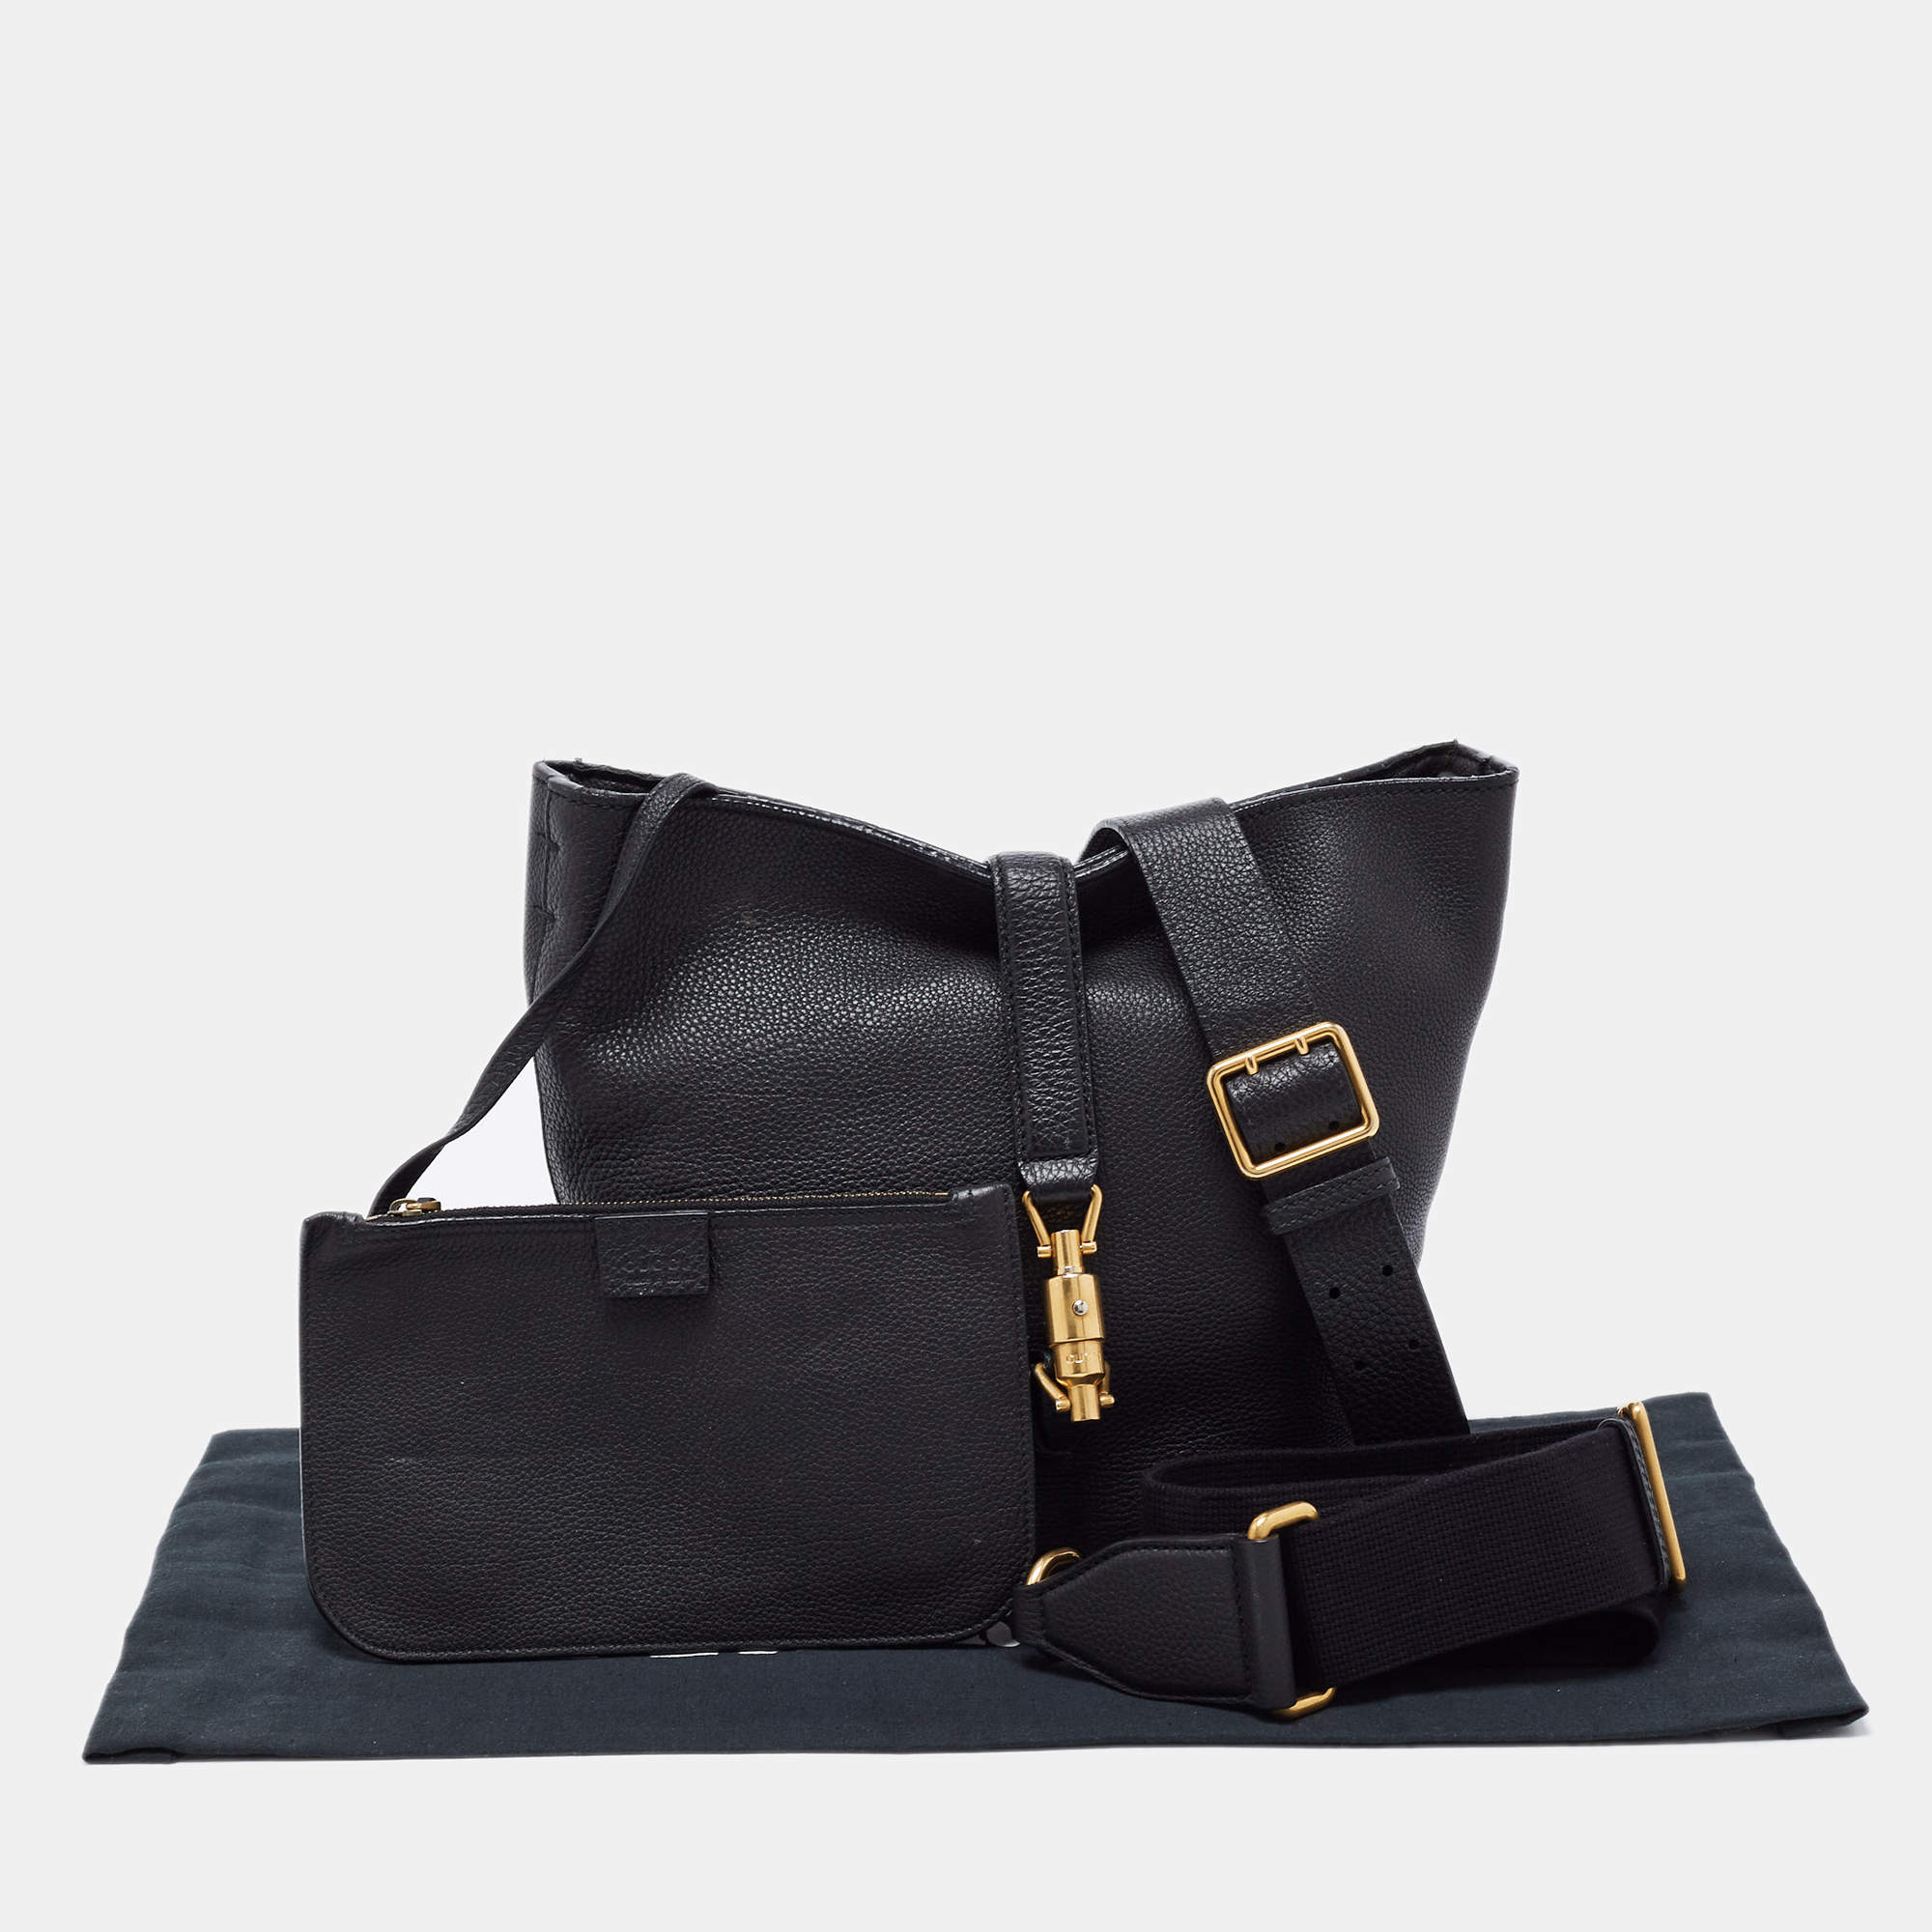 A Closet Staplethe Celine bag  Gucci Jackie Handbag 387585